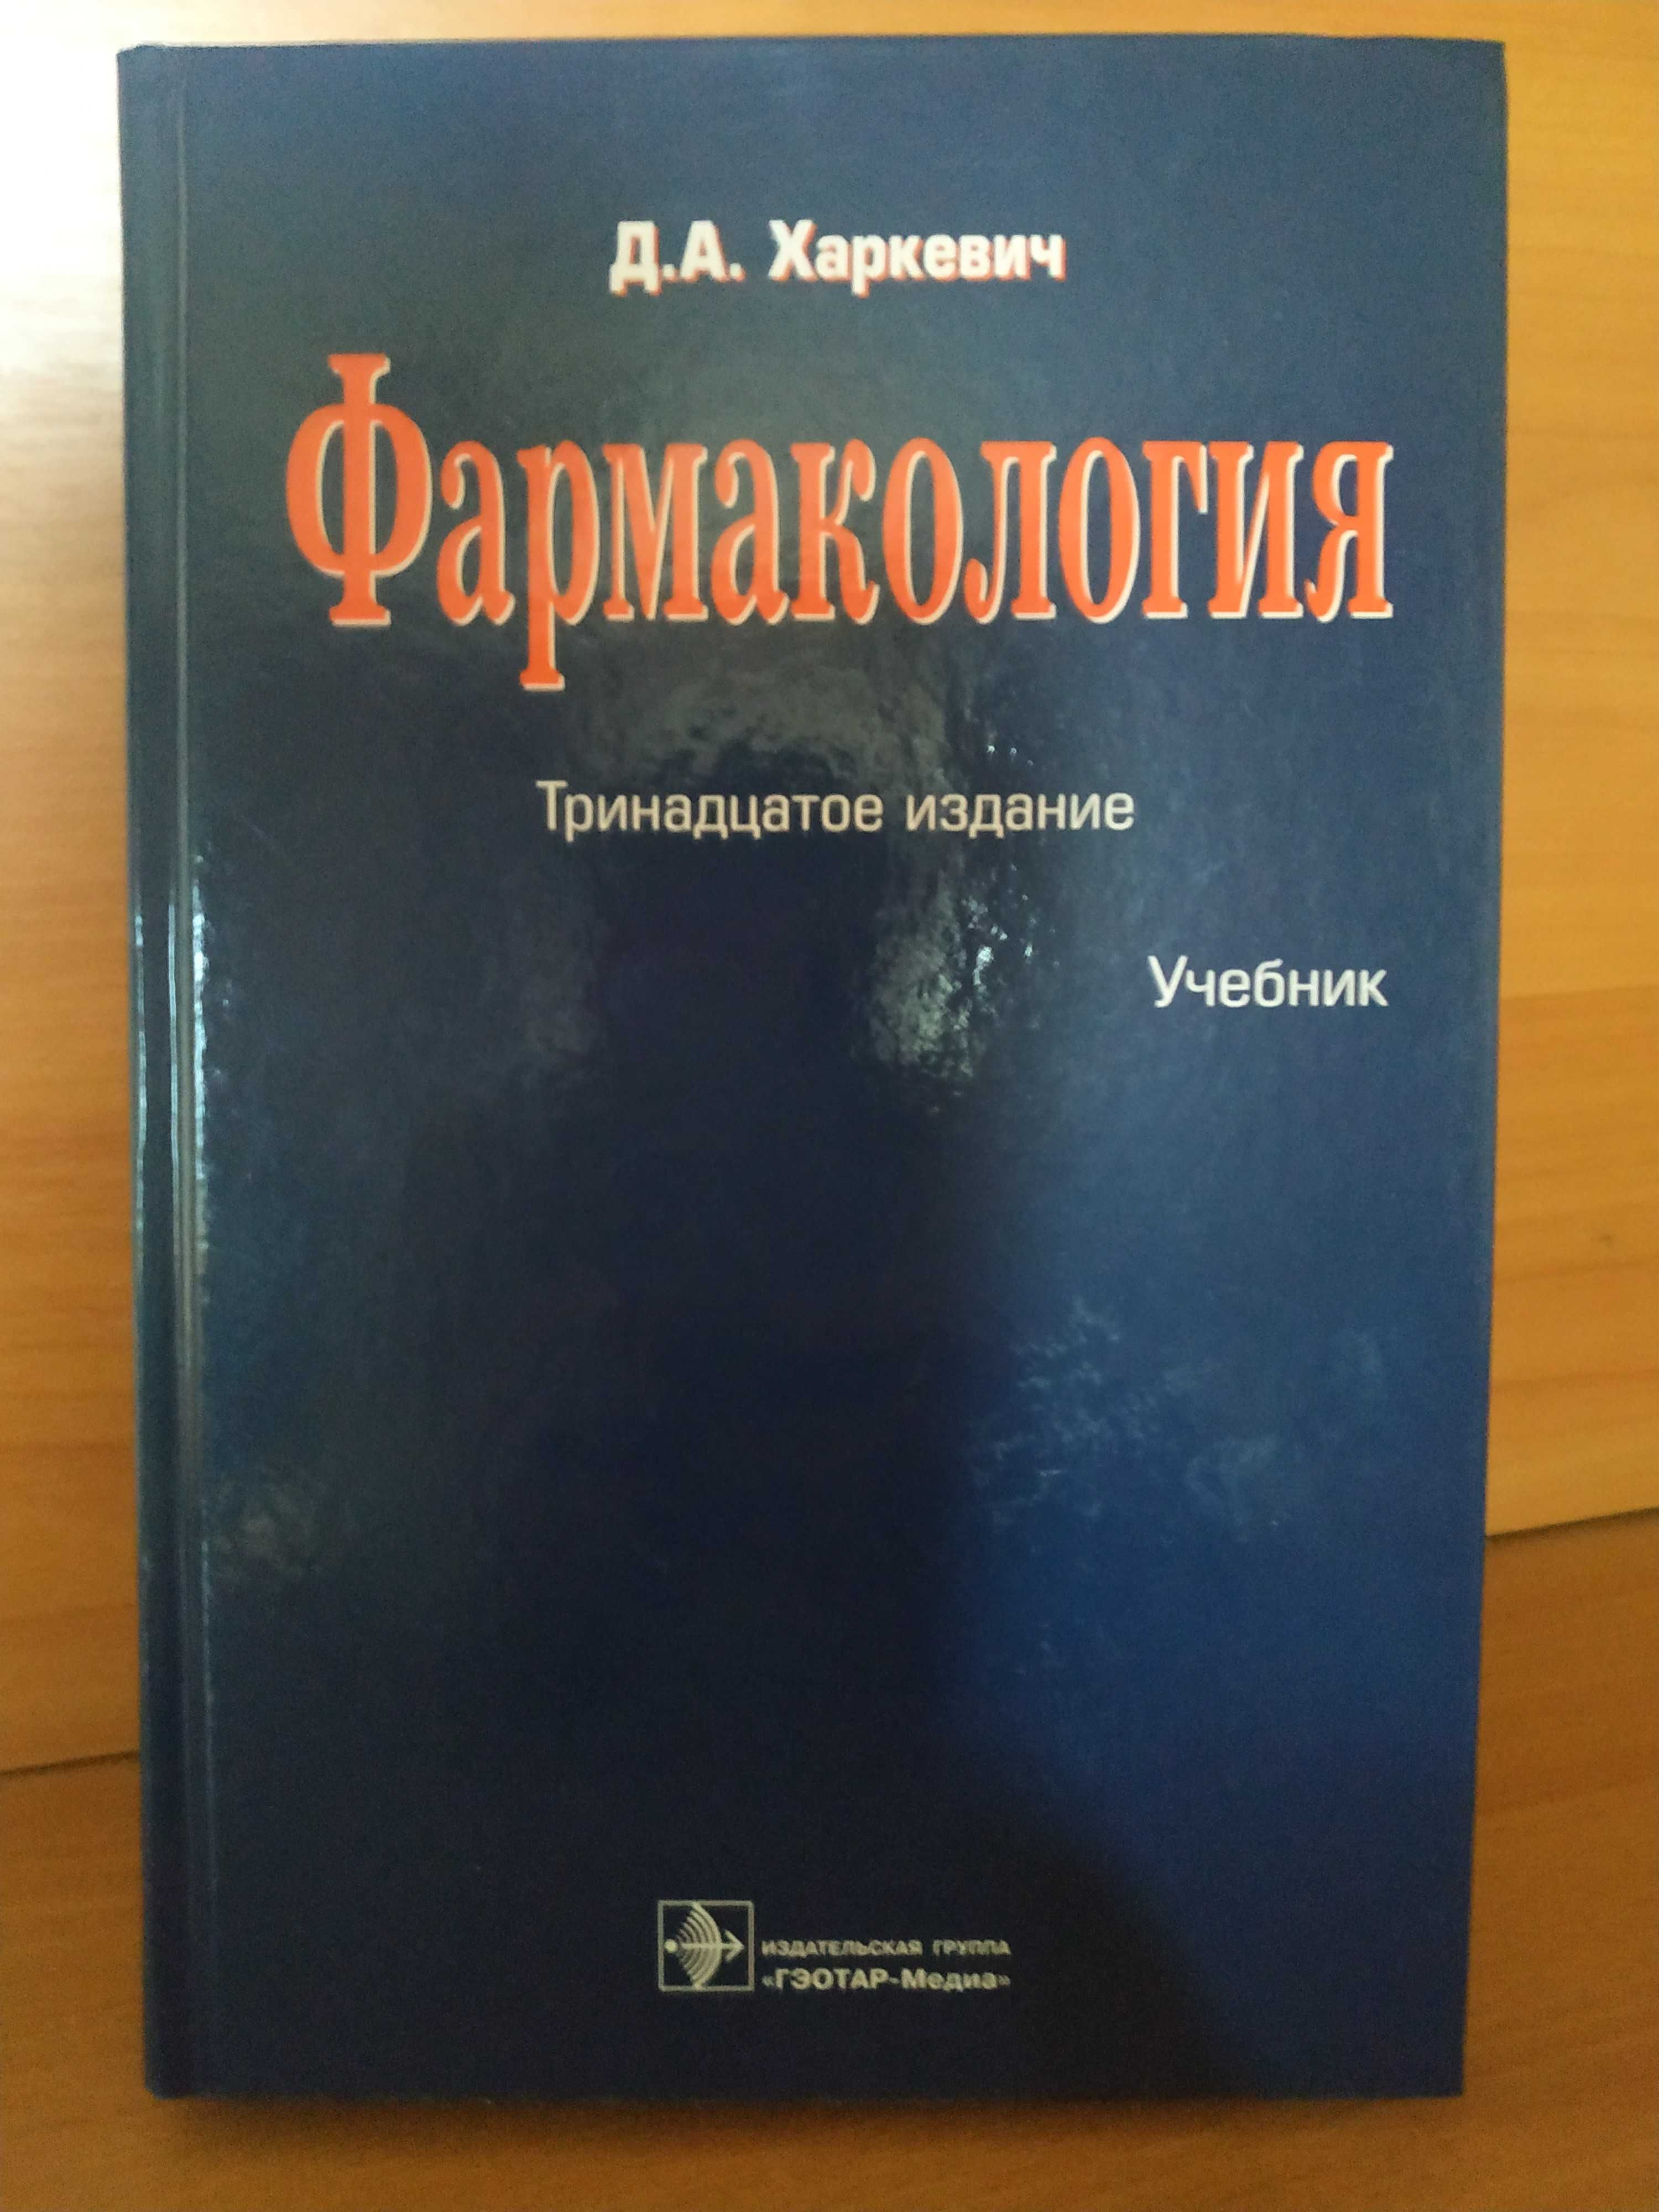 Д.А. Харкевич "Фармакология" (13-е издание)